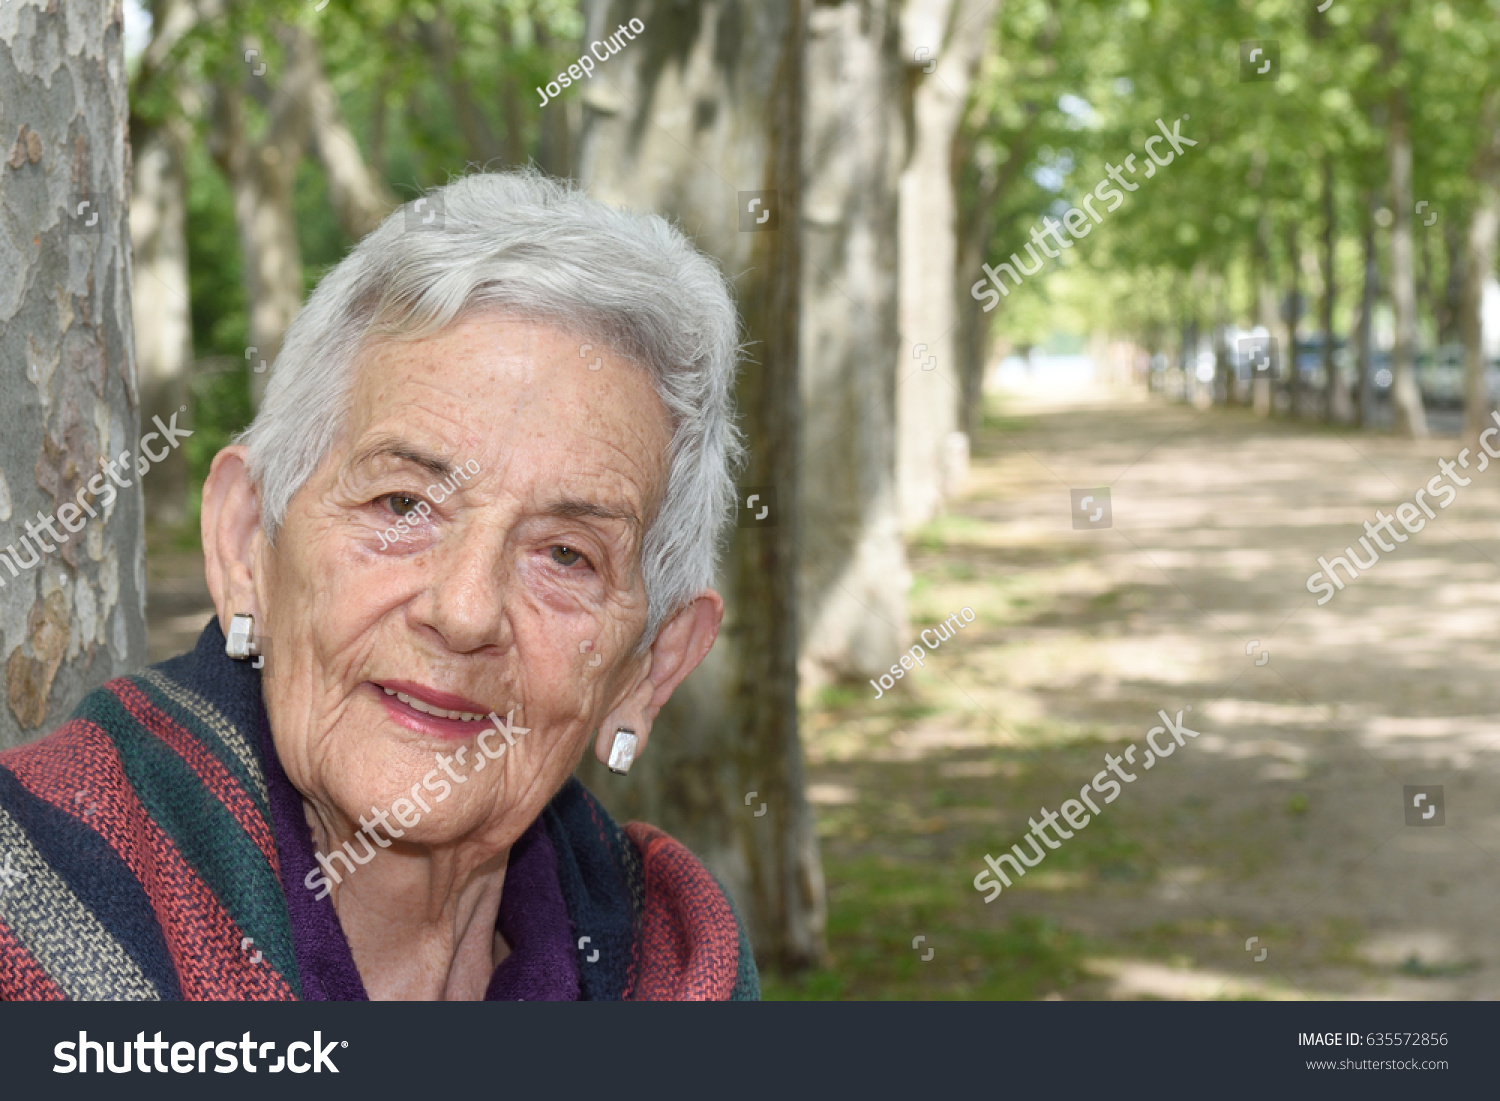 Portrait of a senior woman #635572856